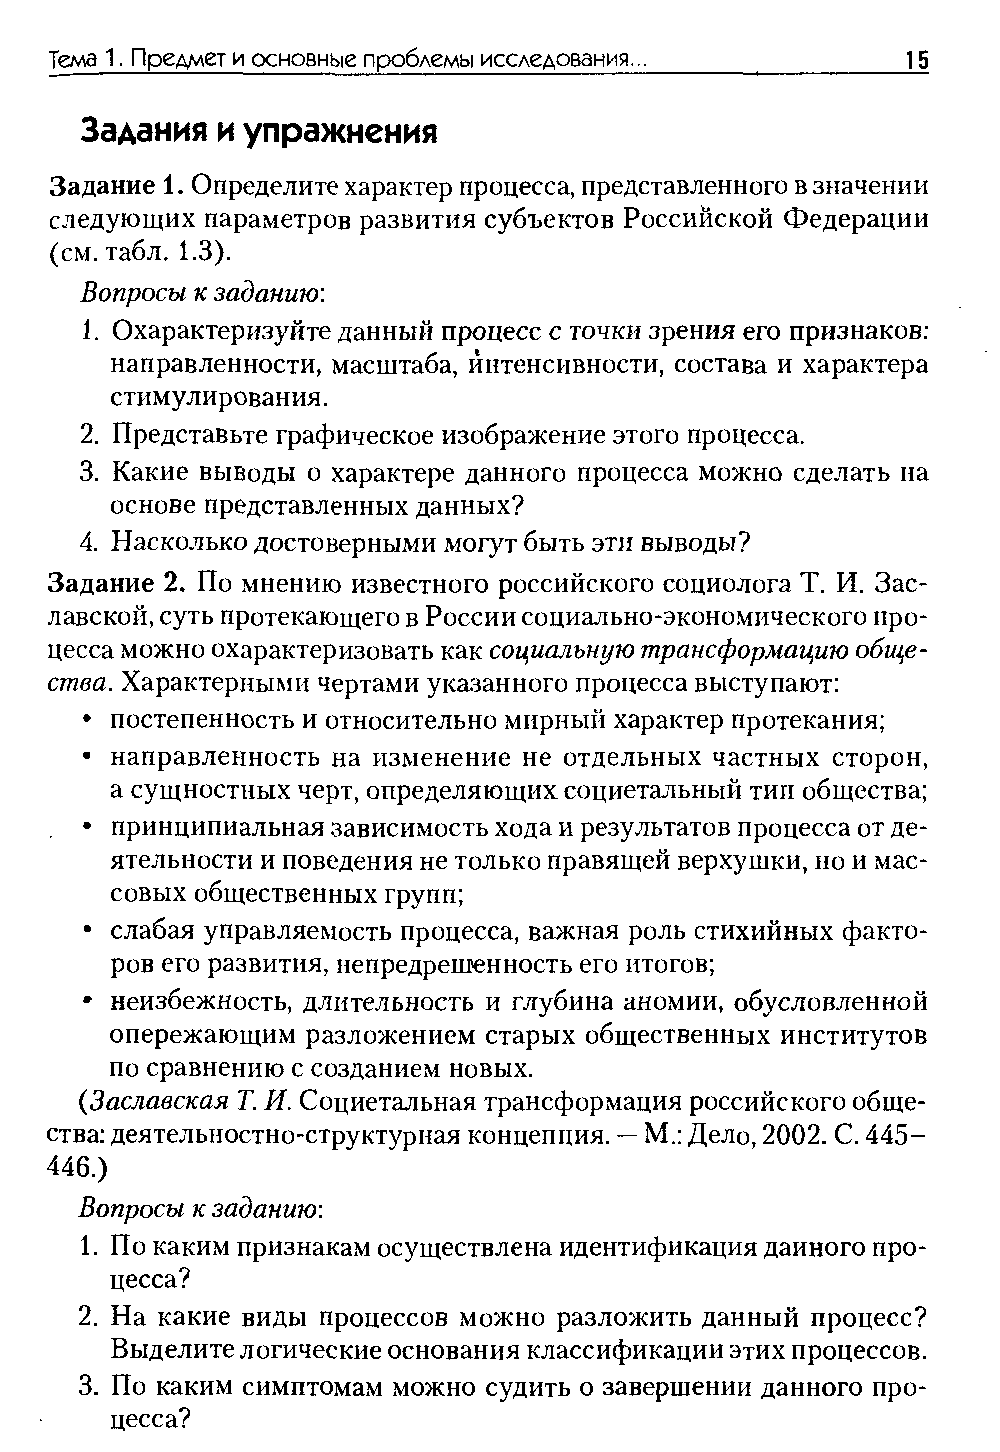 Задание 1. Определите характер процесса, представленного в значении следующих параметров развития субъектов Российской Федерации (см. табл. 1.3).